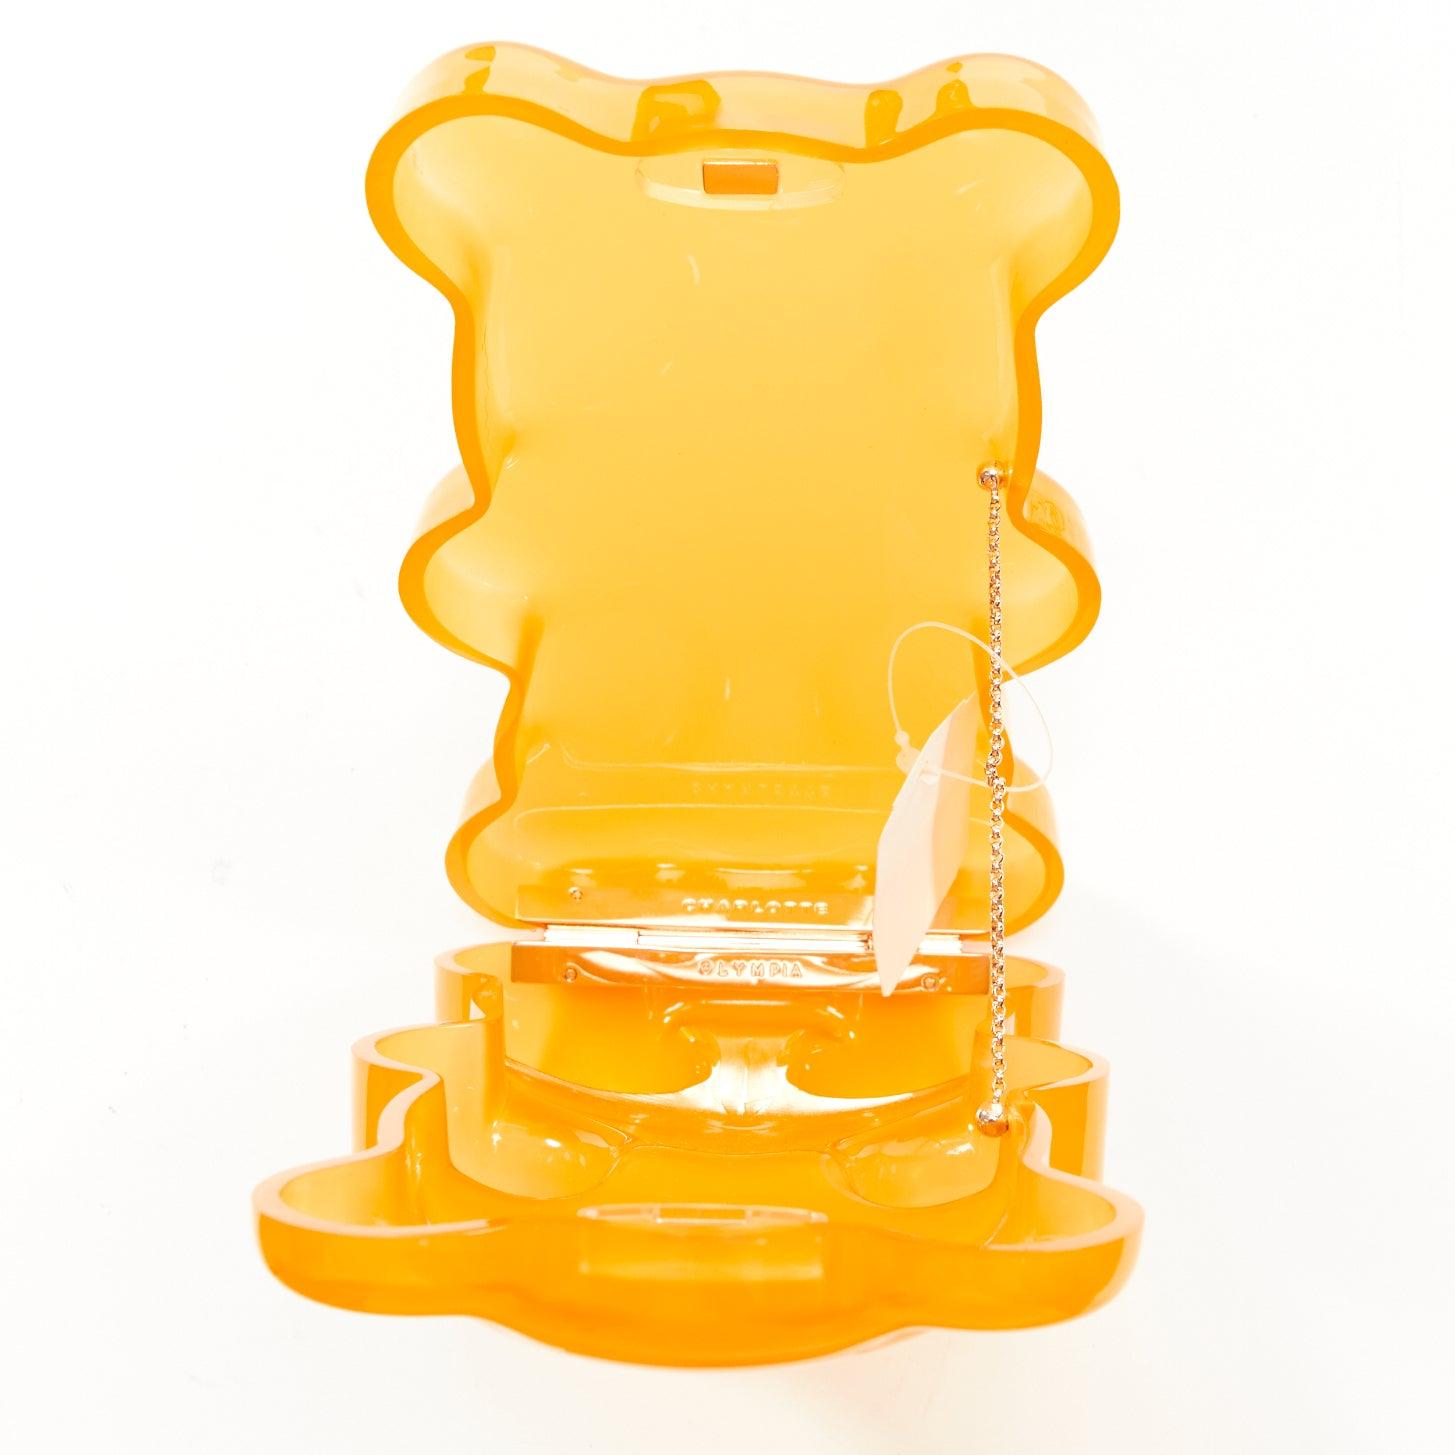 CHARLOTTE OLYMPIA egg yolk yellow gummy bear acrylic box clutch bag For Sale 5